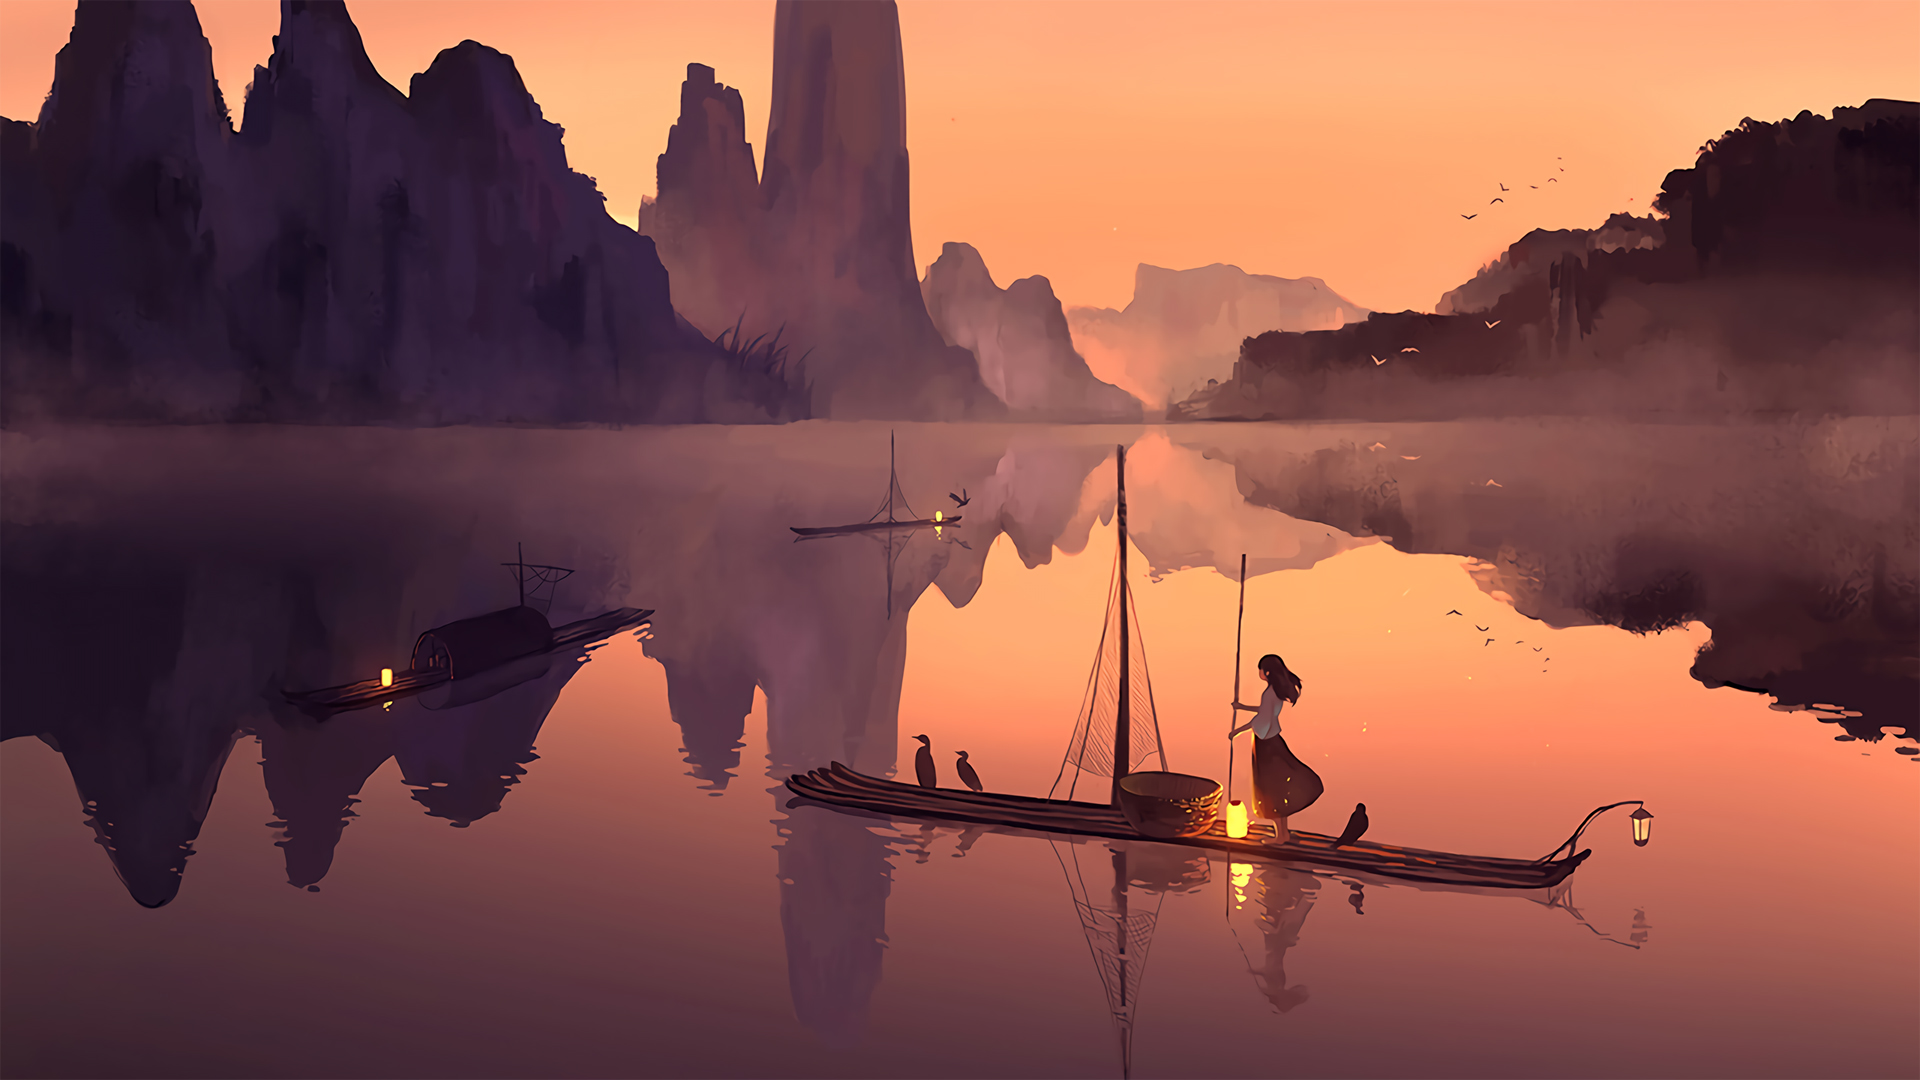 落日下 山水湖泊中 一个划着竹排的渔家少女唯美动漫<span style='color:red;'>手绘</span>壁纸图片 黄昏